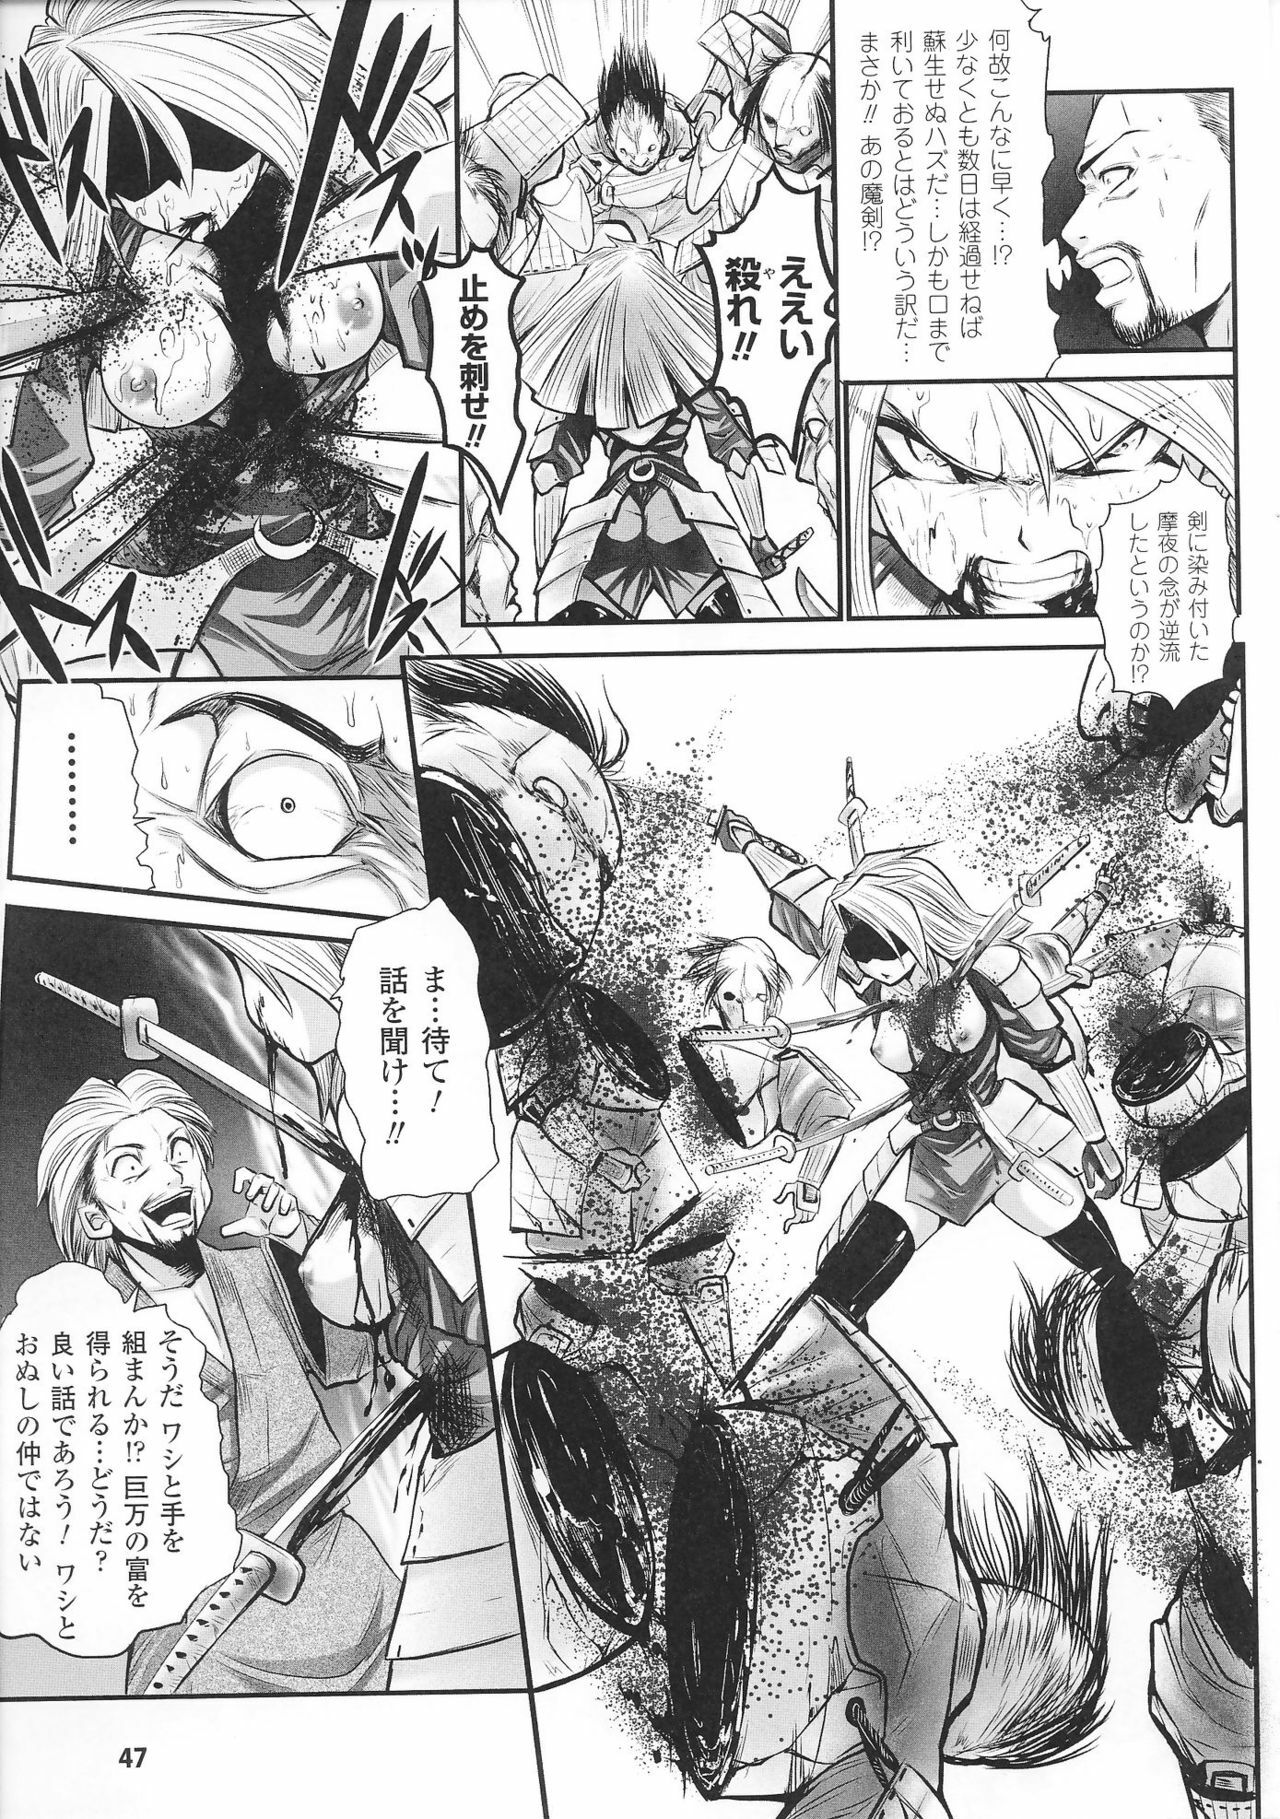 [Anthology] Hime Musha Anthology Comics | Princess Warrior Anthology Comics page 49 full